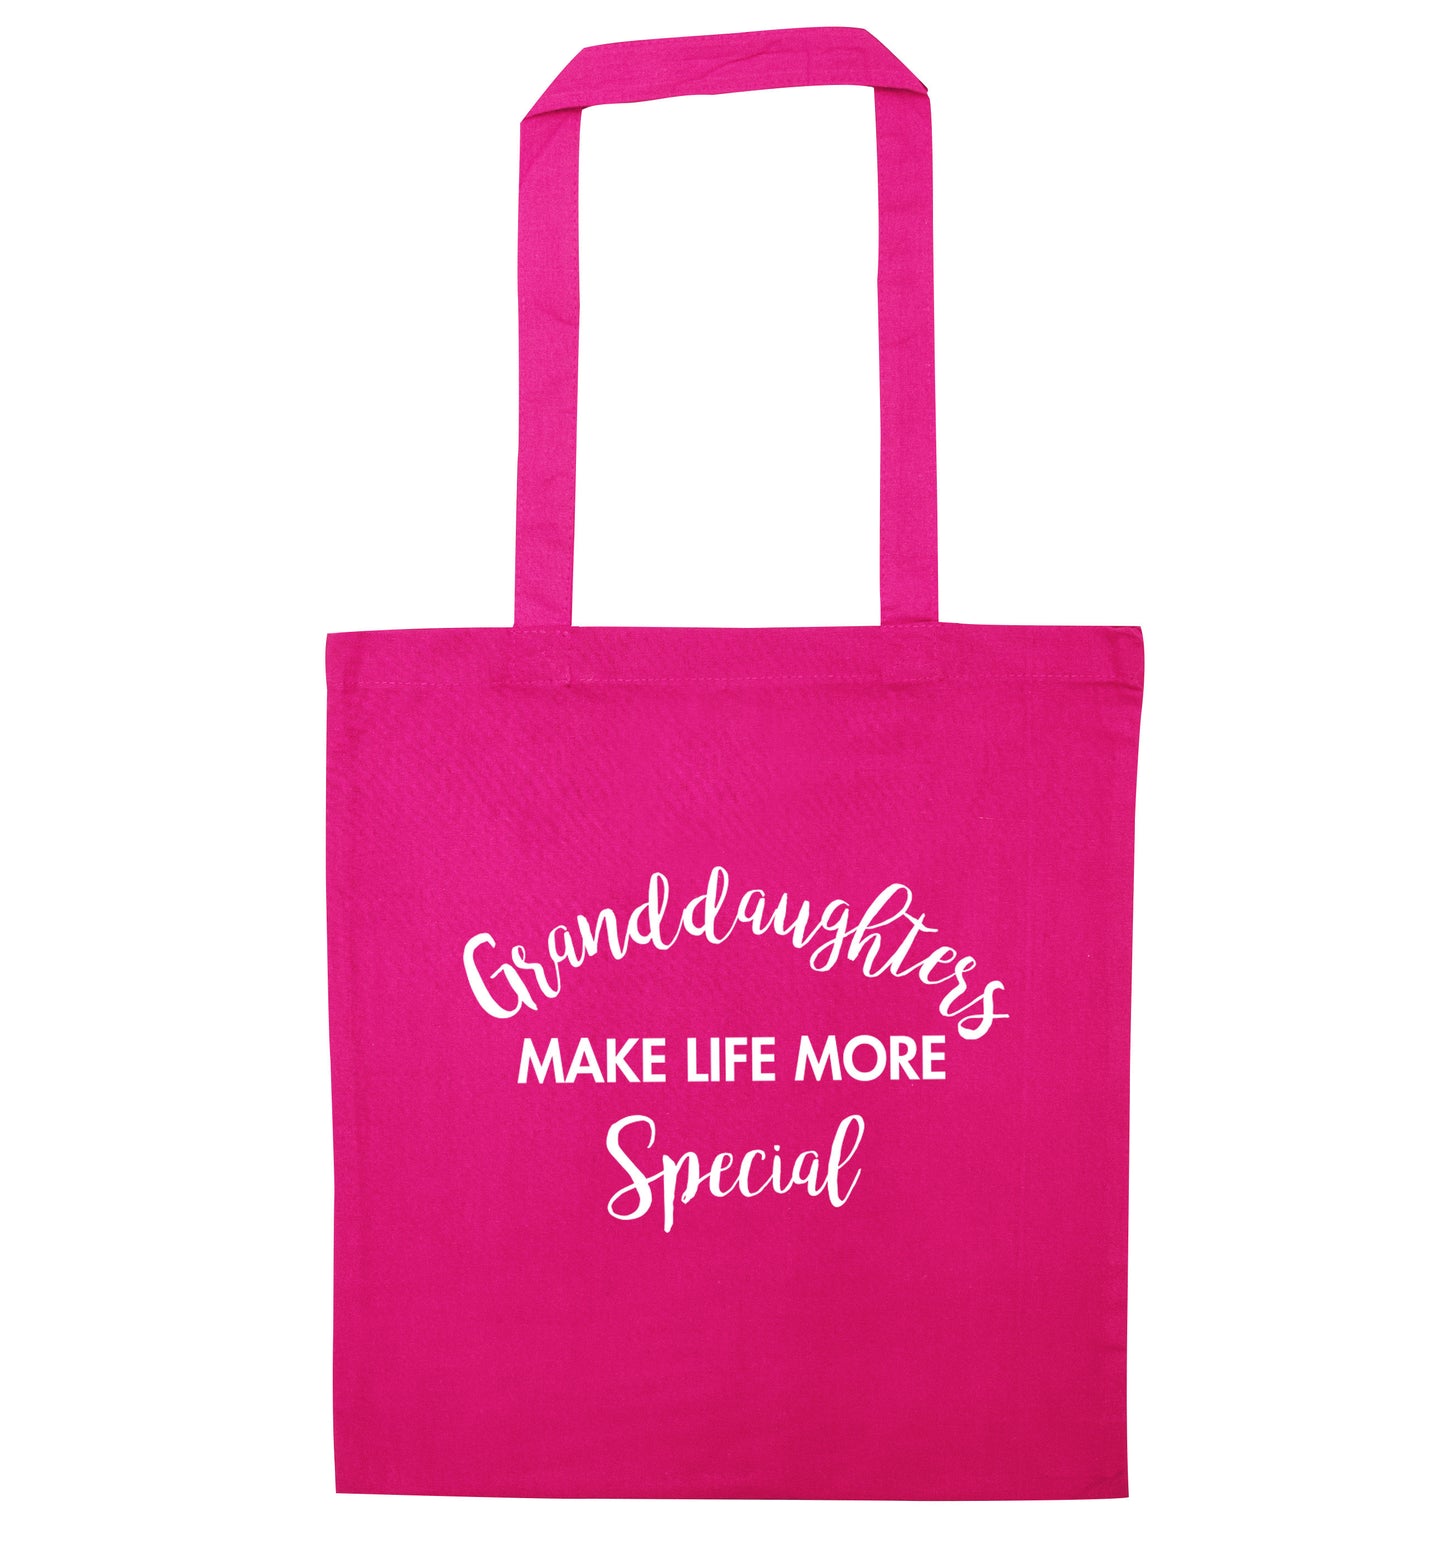 Granddaughters make life more special pink tote bag